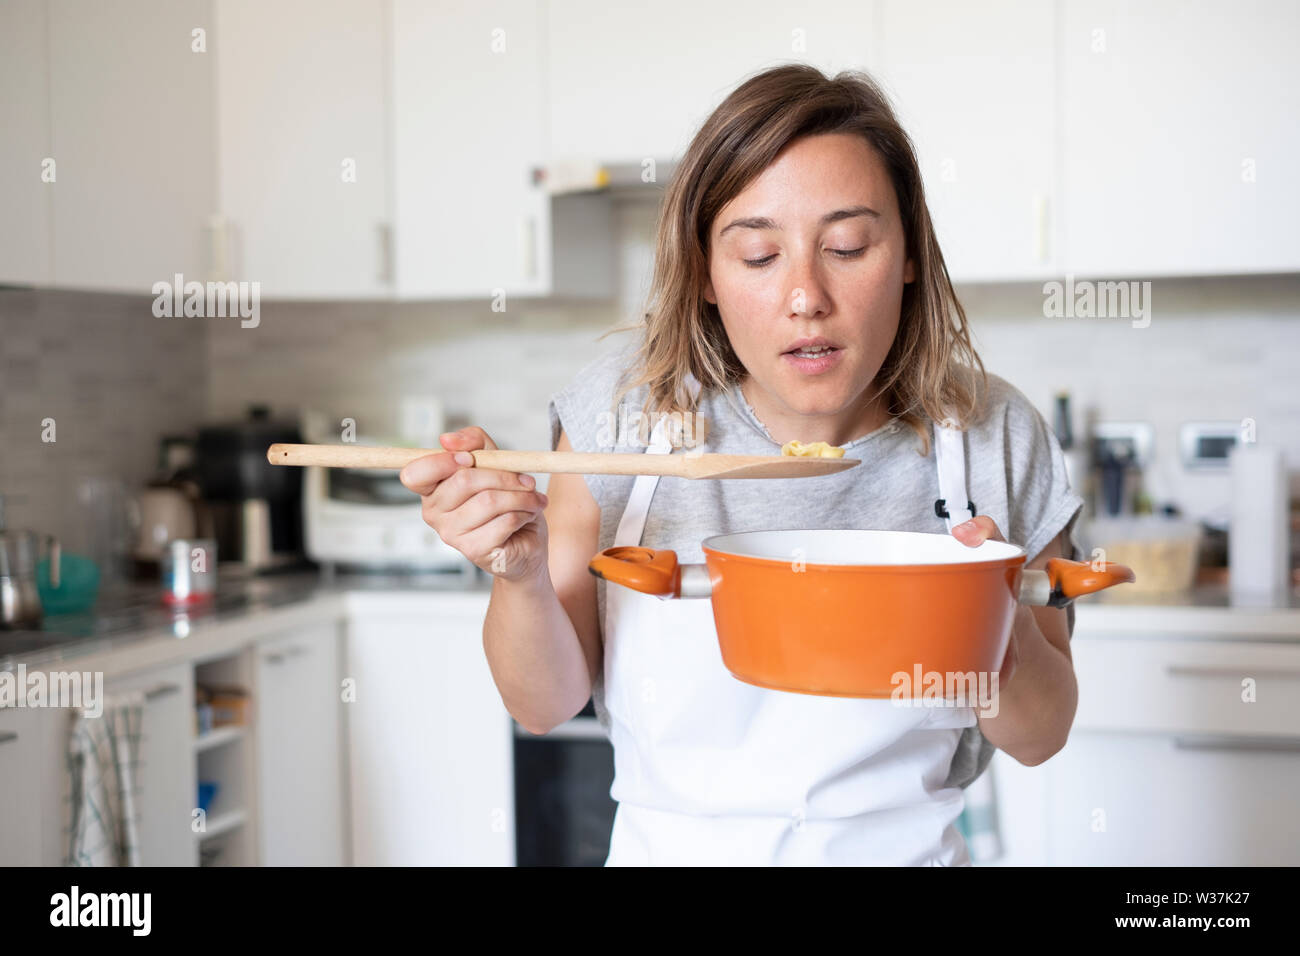 Mujer joven degustación de alimentos en el hogar cocina Foto de stock